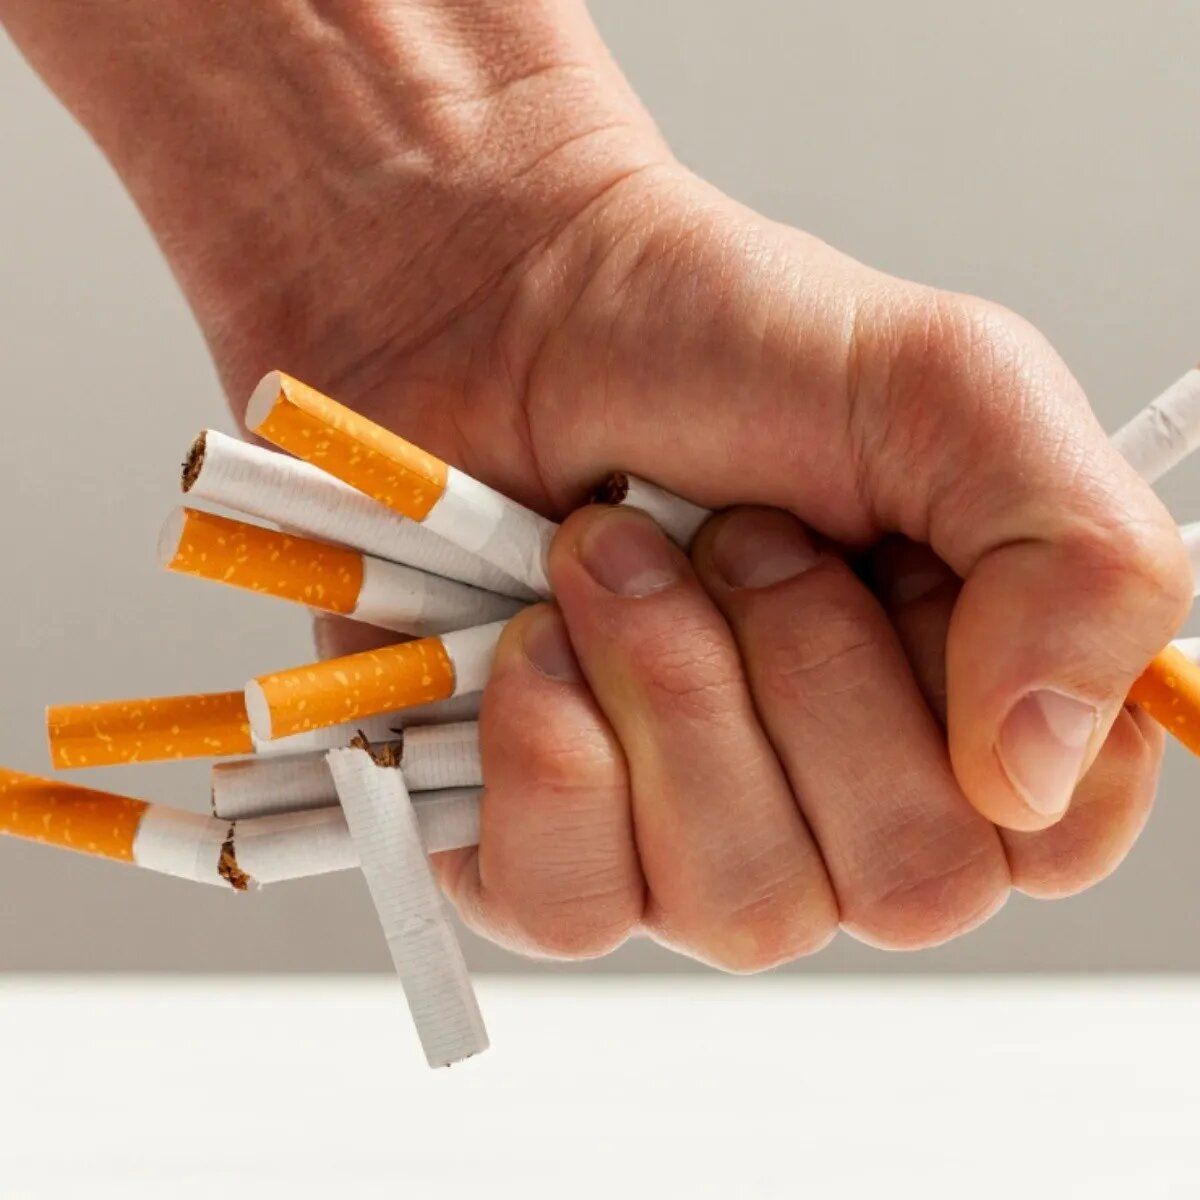 En qué consiste el programa de asistencia para dejar de fumar